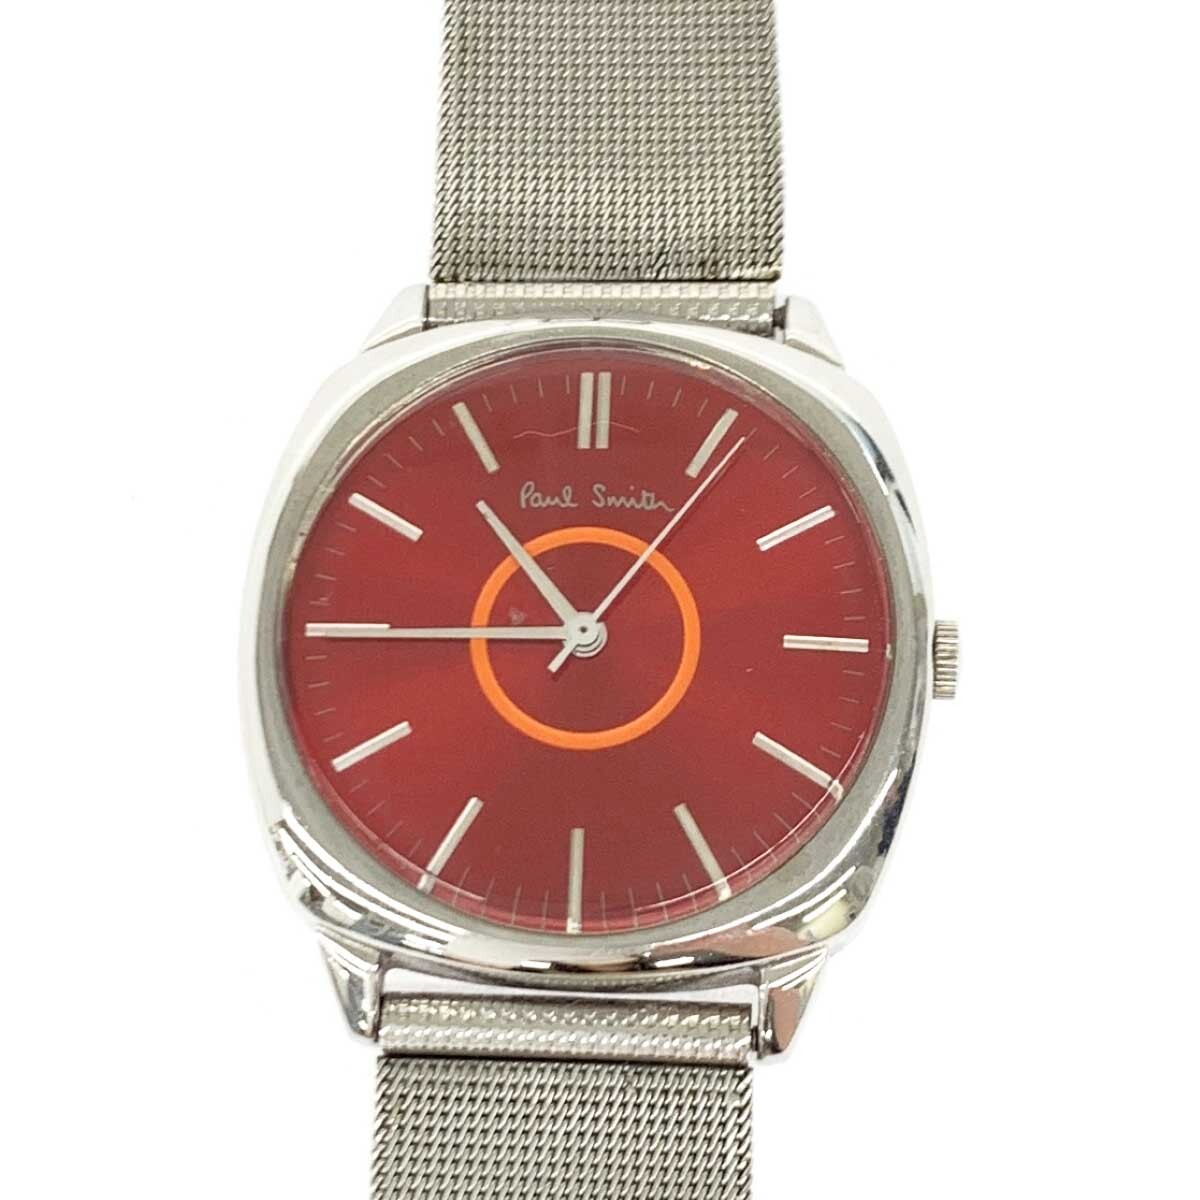 ◆Paul Smith collection ポールスミス コレクション 腕時計 クォーツ◆5530-F52258 シルバーカラー SS レディース ウォッチ watch_画像4